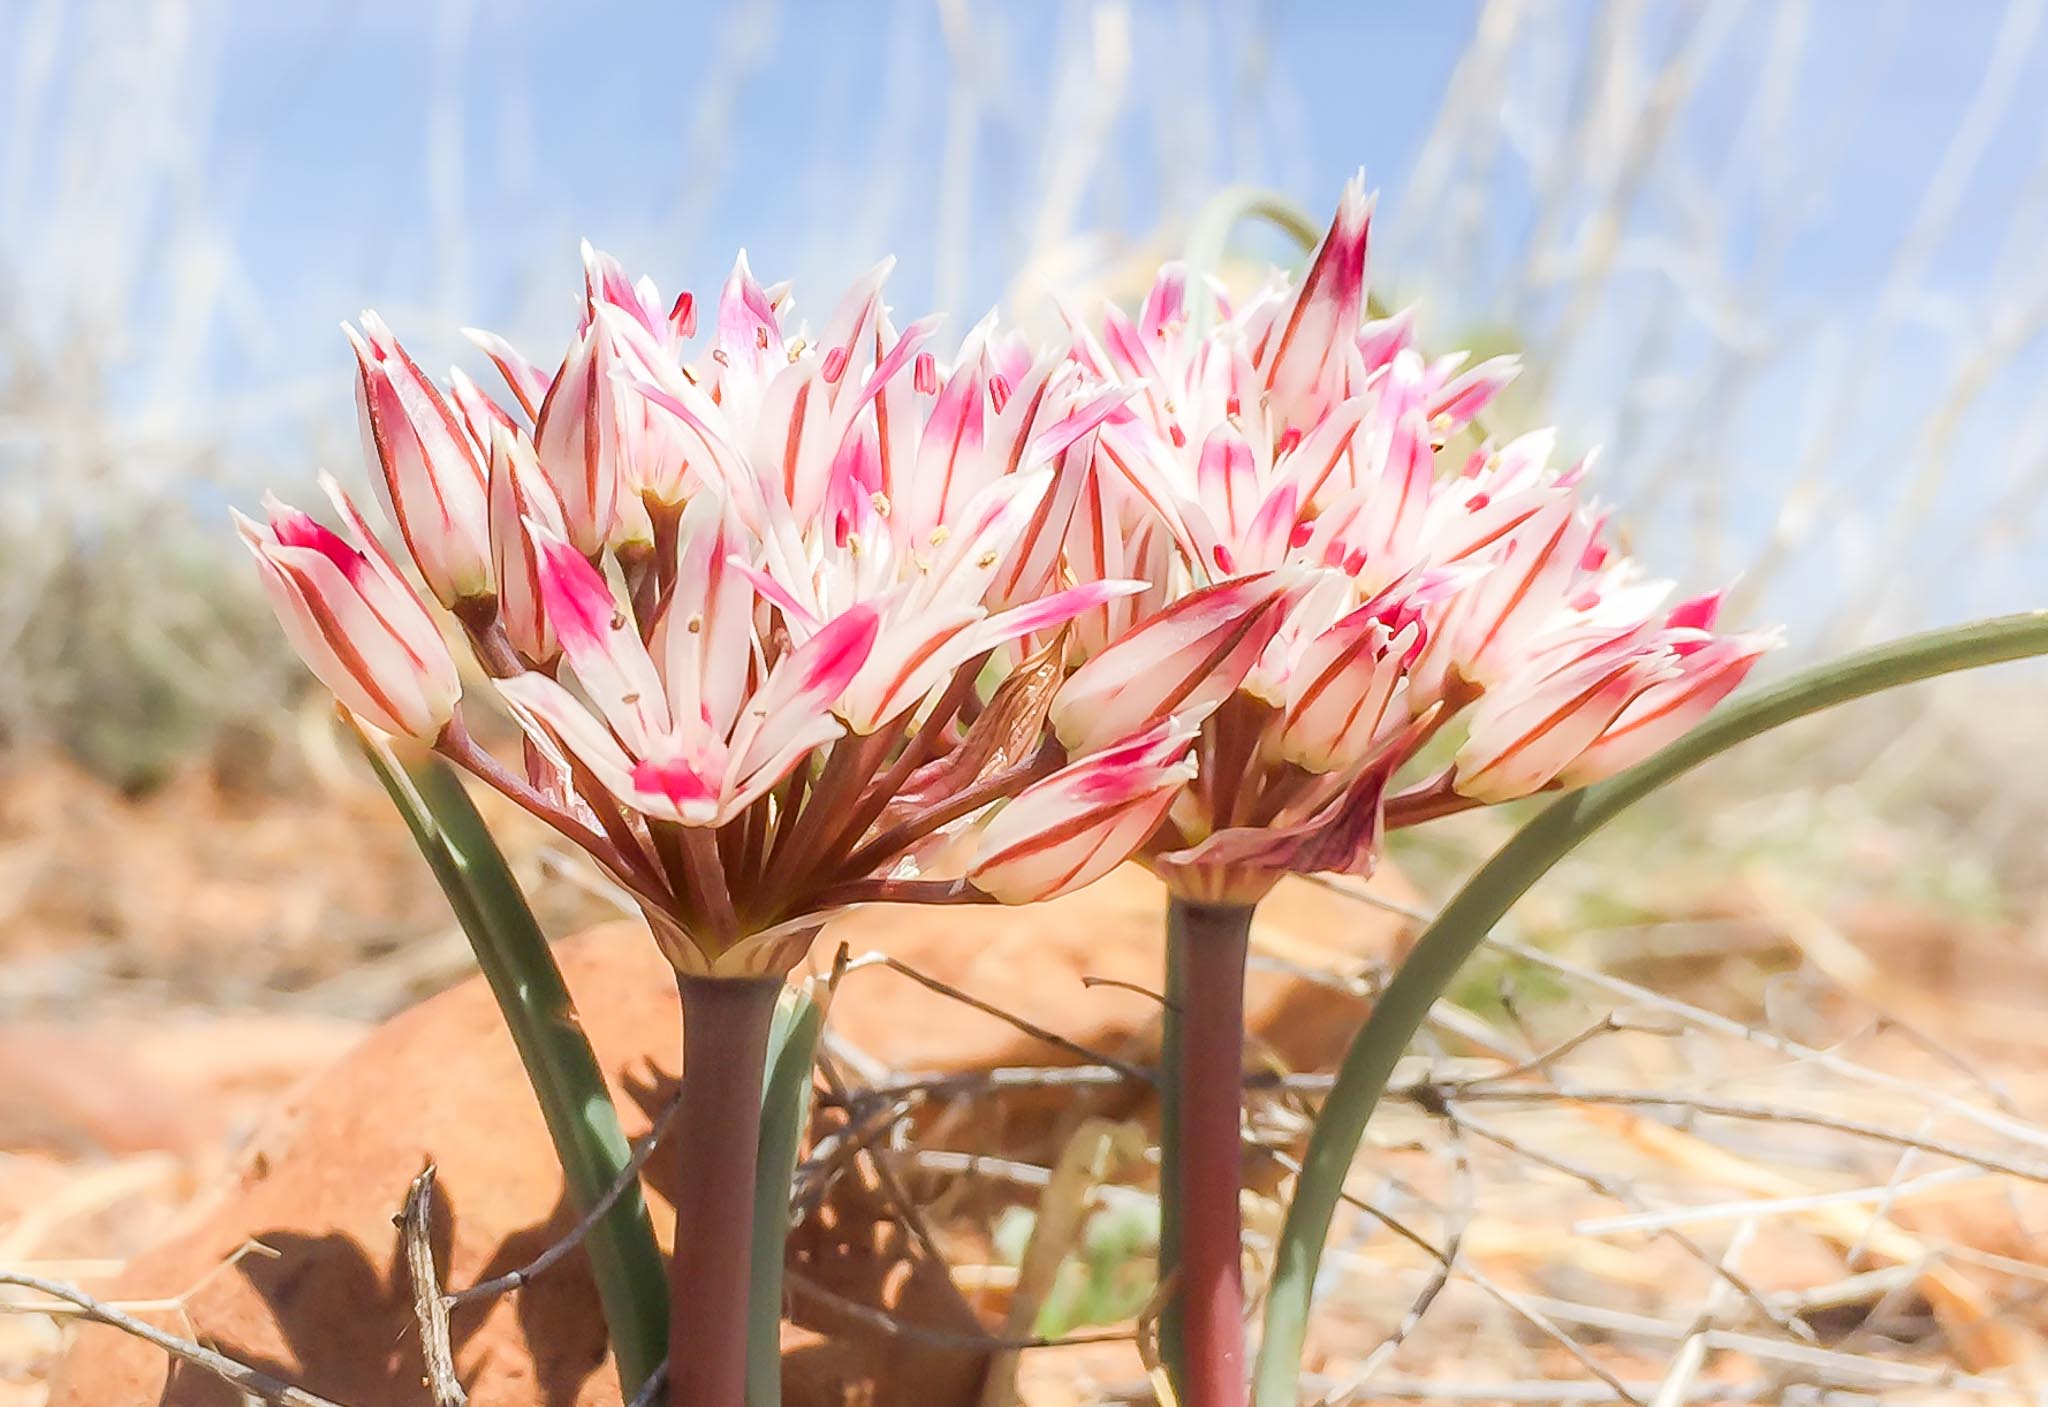 Desert Onion flower, City of Rocks State Park, Faywood NM, April 5, 2015